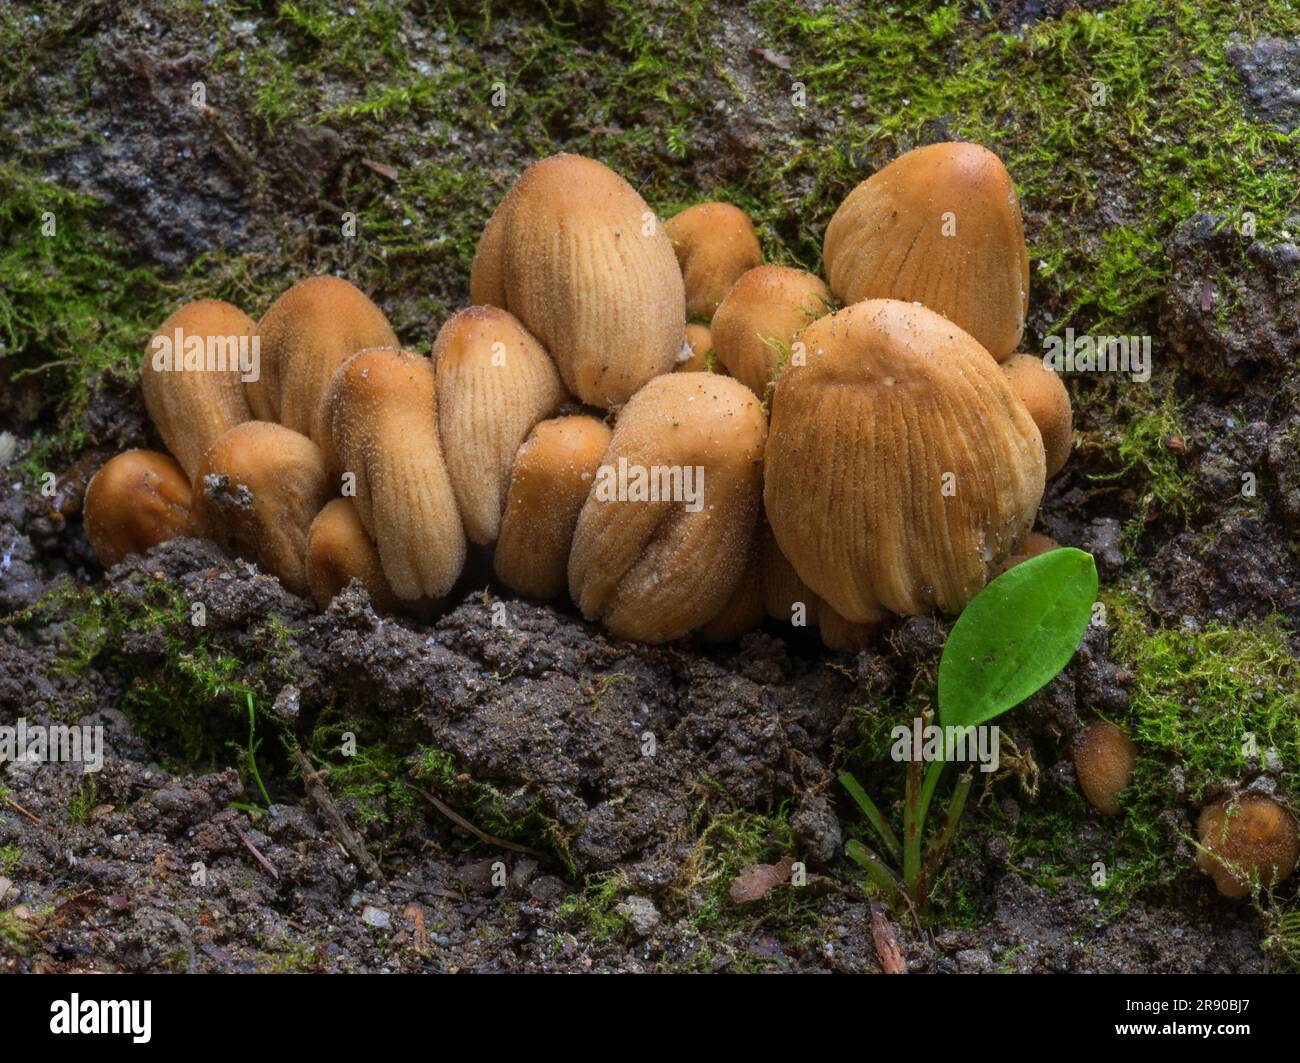 Coprinellus micaceus è una specie comune di fungo. I nomi comuni sono berretto in mica, berretto lucido o cappuccio lucente Foto Stock